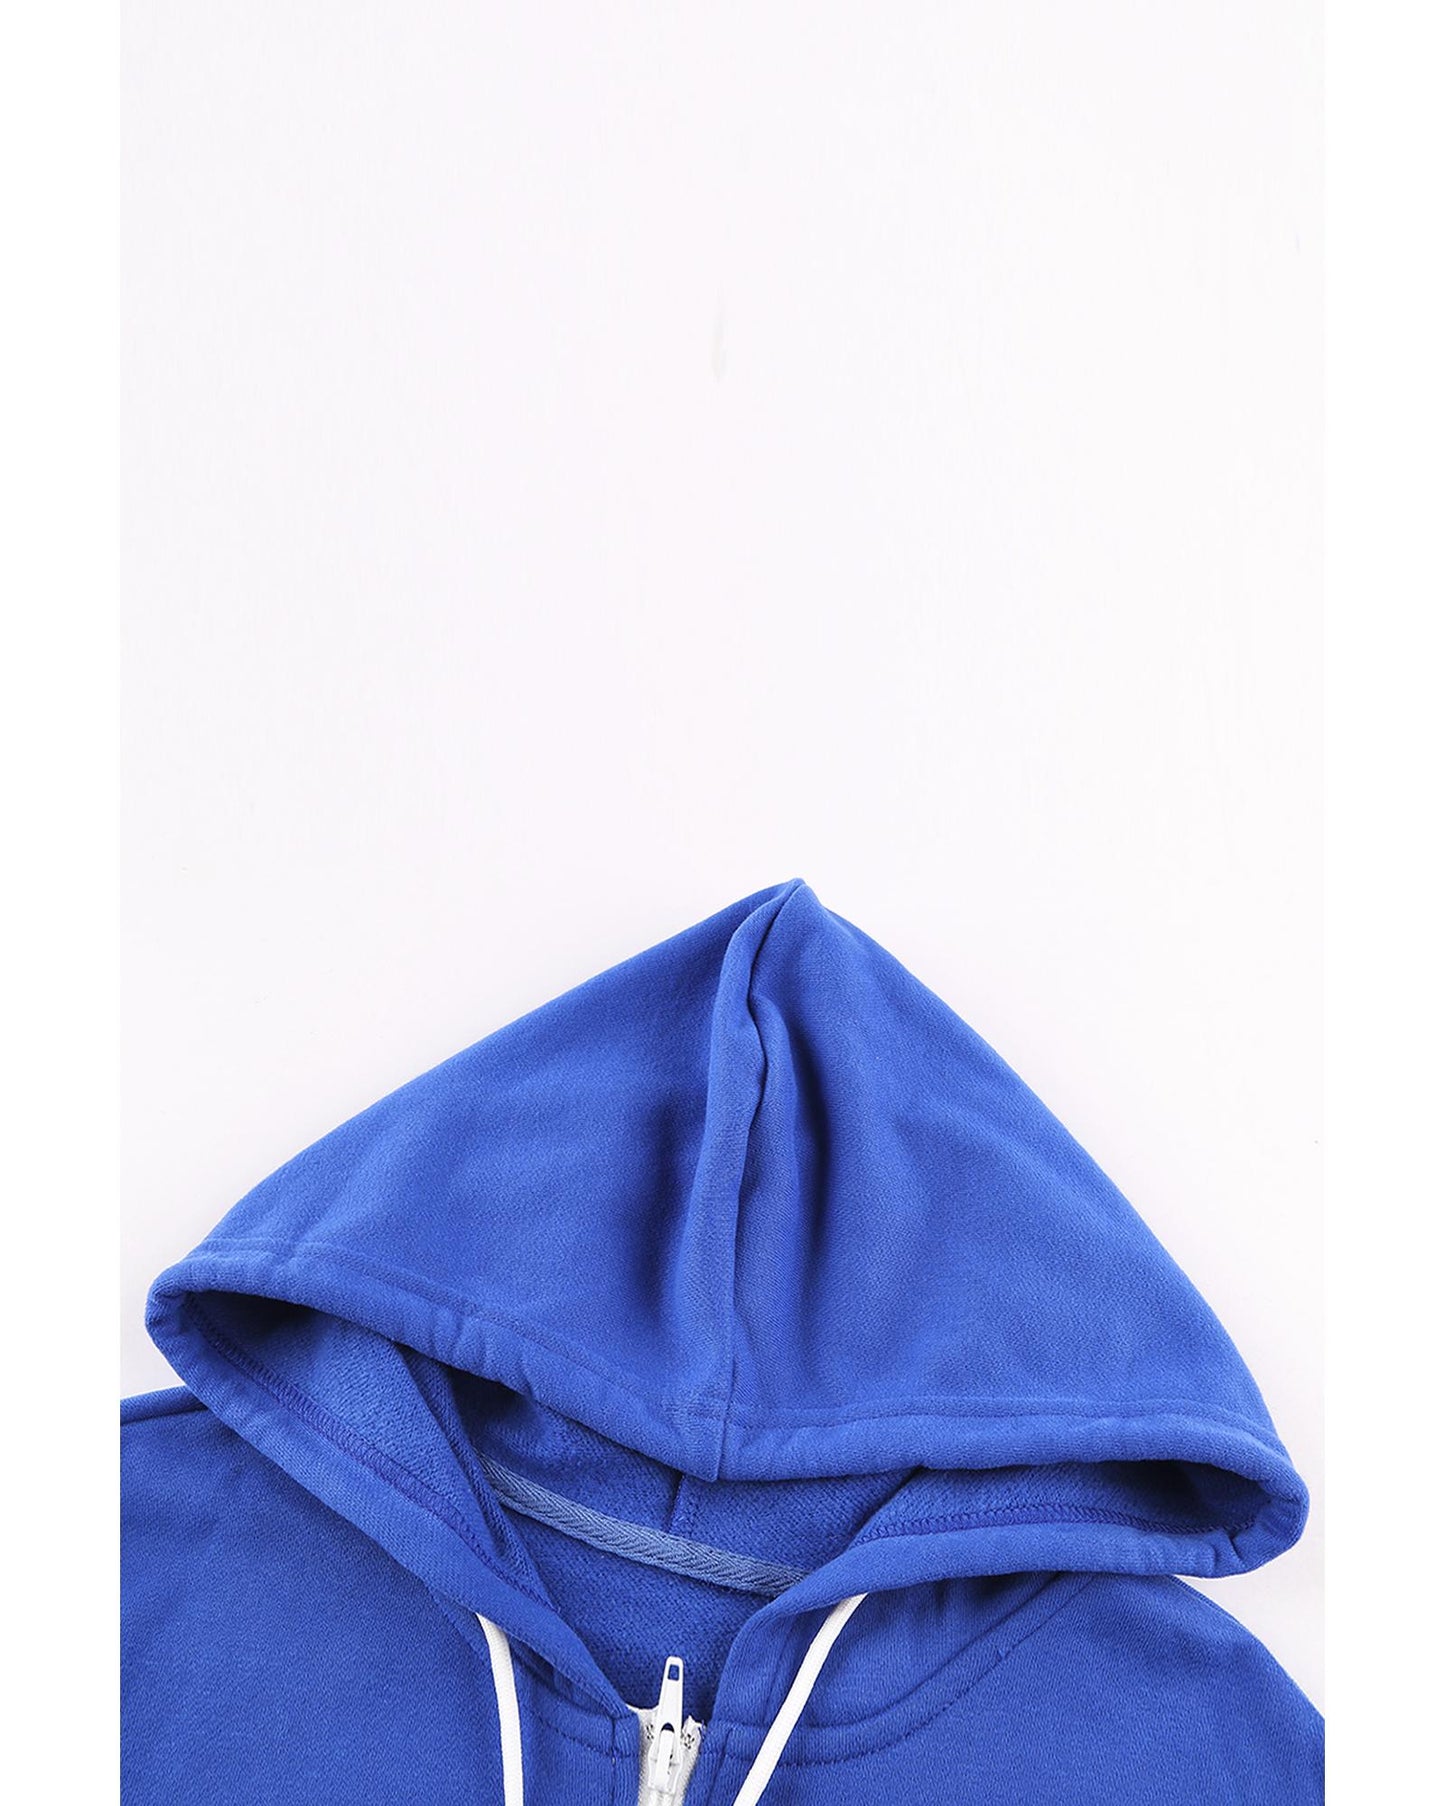 Azura Exchange Black Zip-up Hoodie Jacket - XL